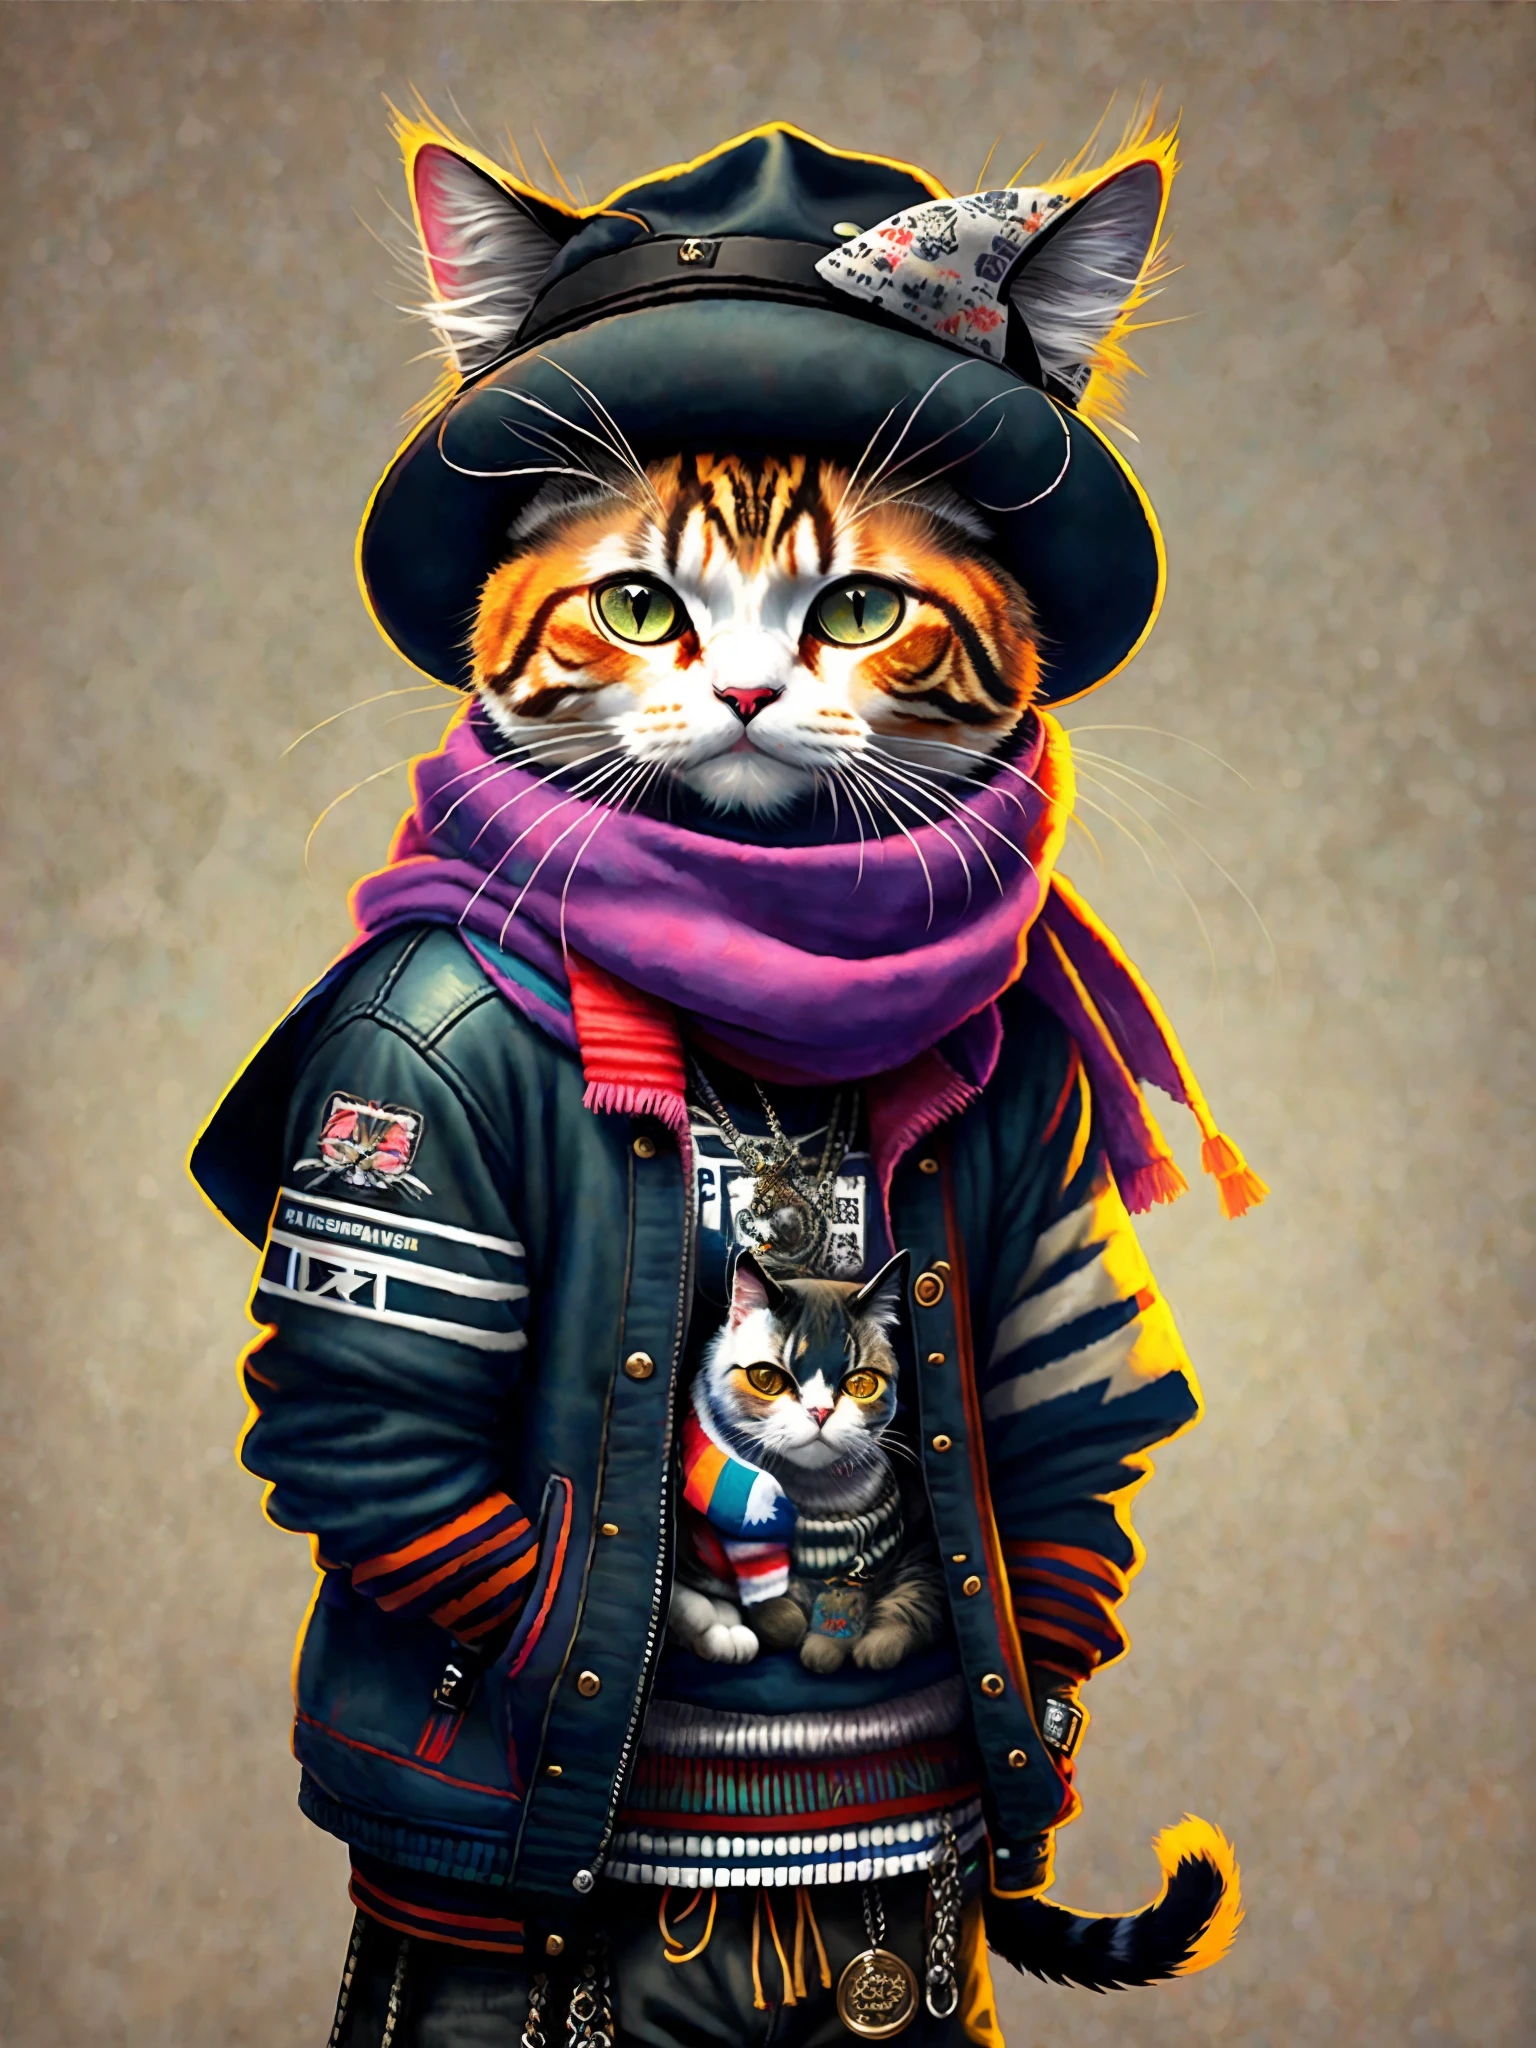 모자와 스카프를 두른 고양이 그림, 아트 스테이션의 트렌드, 펑크 옷을 입고, 상세한 초현실적 렌더링, 영국 갱단 멤버, 스트리트 스타일, 위협적인 포즈, 고양이의 행성, 패션과 함께 옷, 도시 사무라이, 야옹, 서부 슬라브 특징, 8 1 5